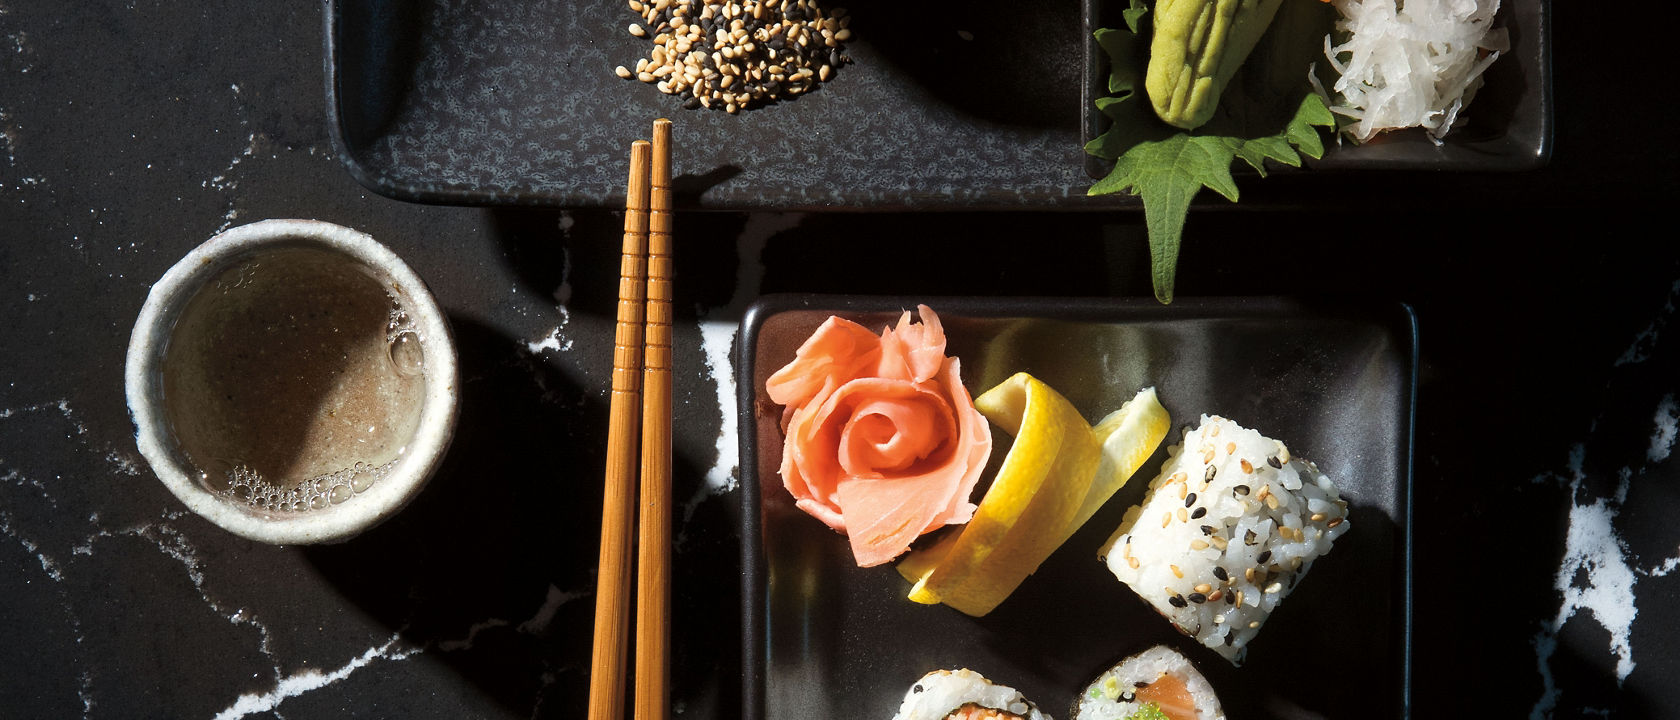 Sushi on Cambria Delgatie™ quartz countertops.